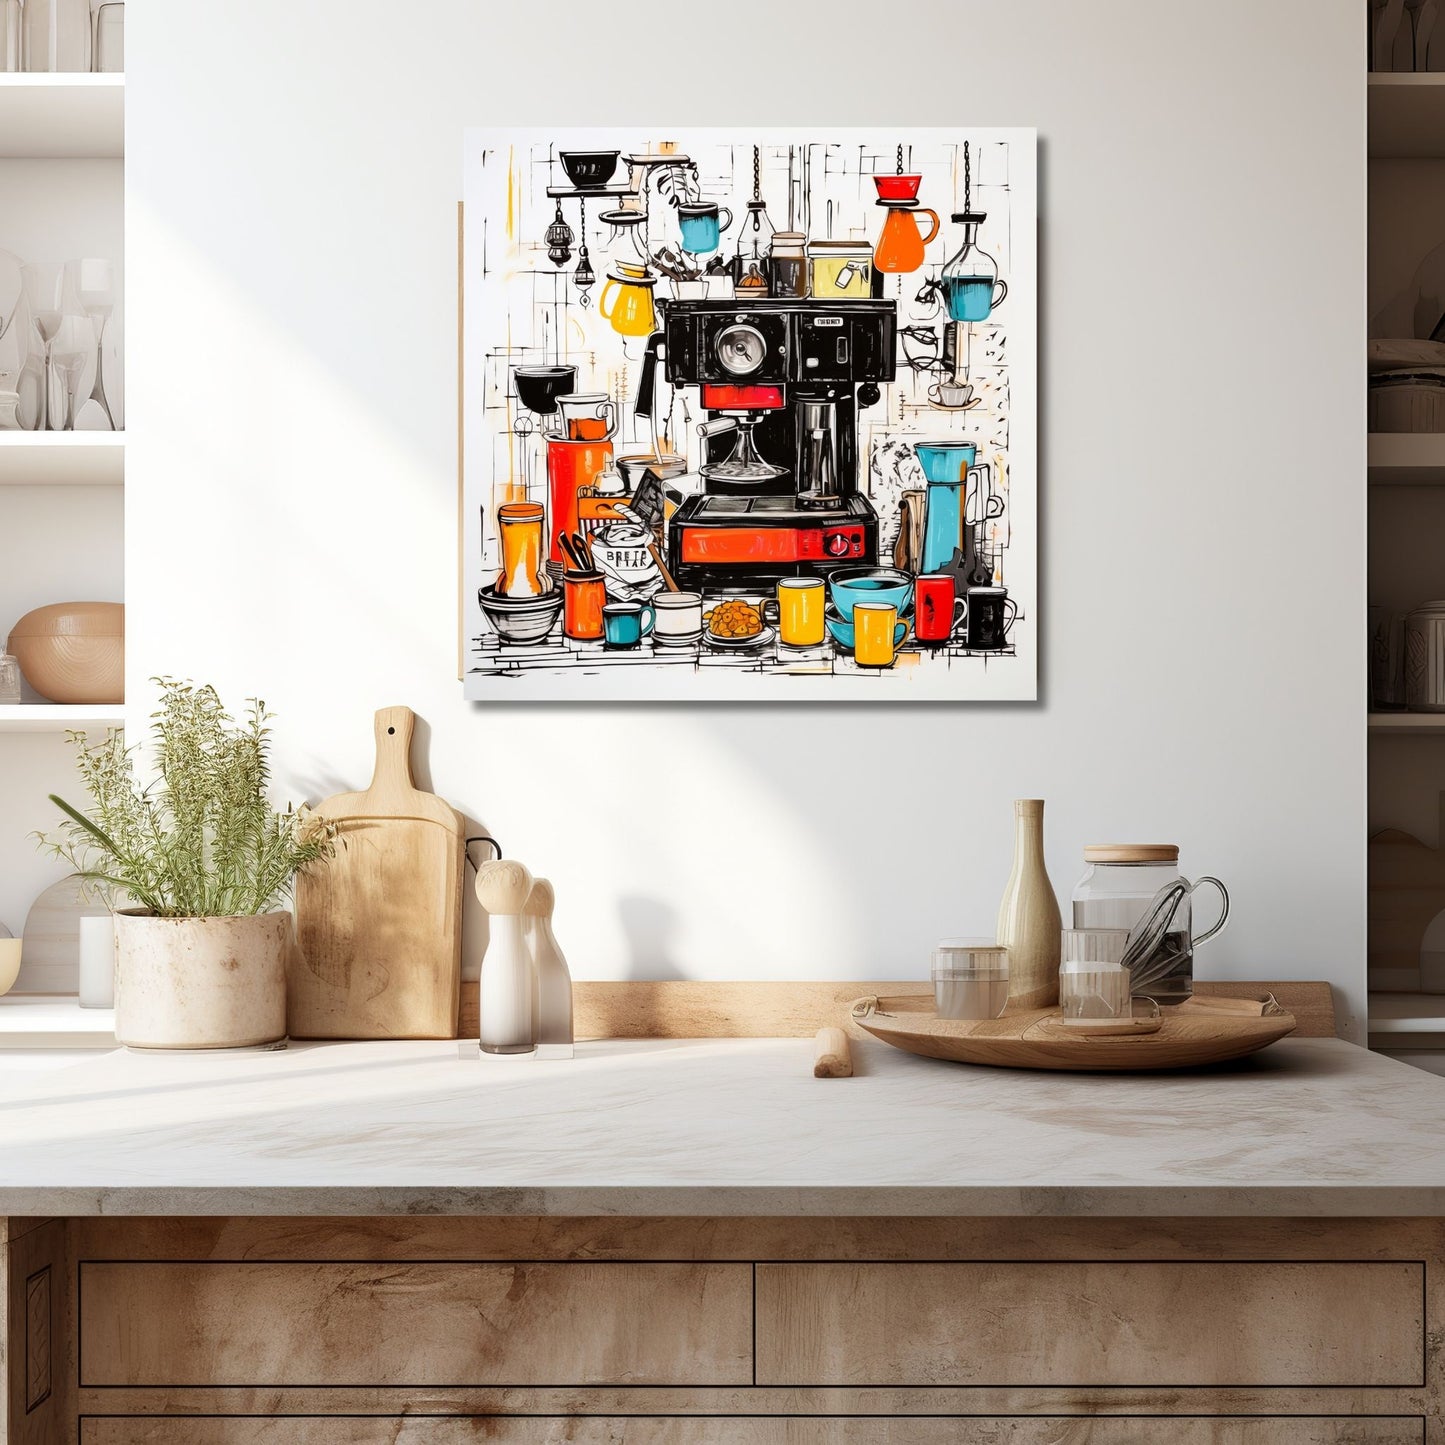 Denne grafiske illustrasjonen viser en sjarmerende scene med en kaffemaskin omgitt av mange kopper og fat, alt håndtegnet i levende farger. Illustrasjonen viser motivet på lerret som henger over en kjøkkenbenk.